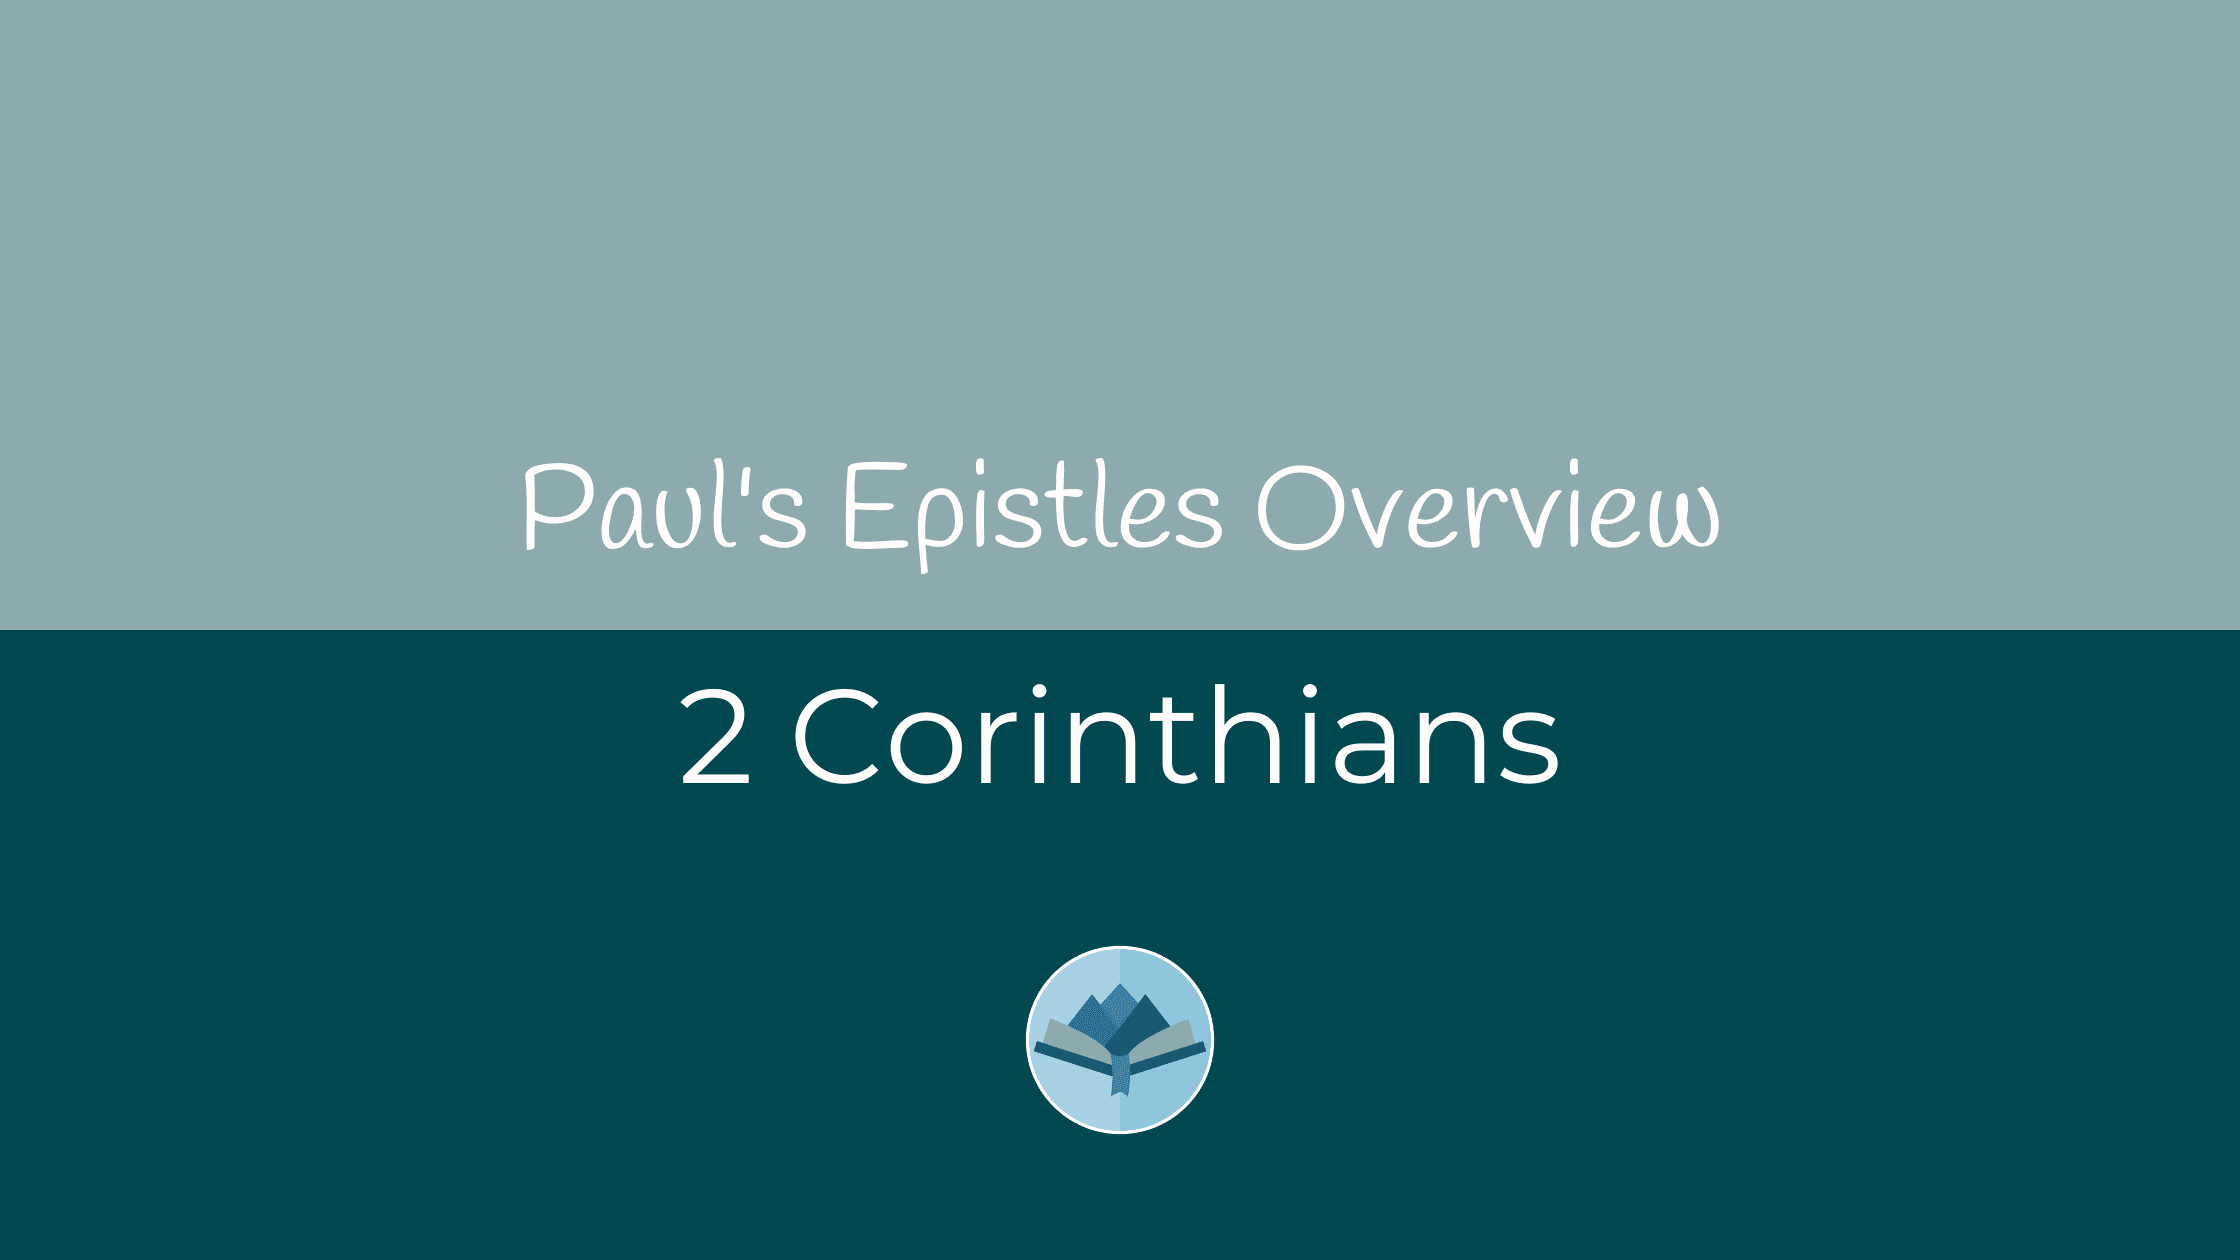 2 Corinthians Overview